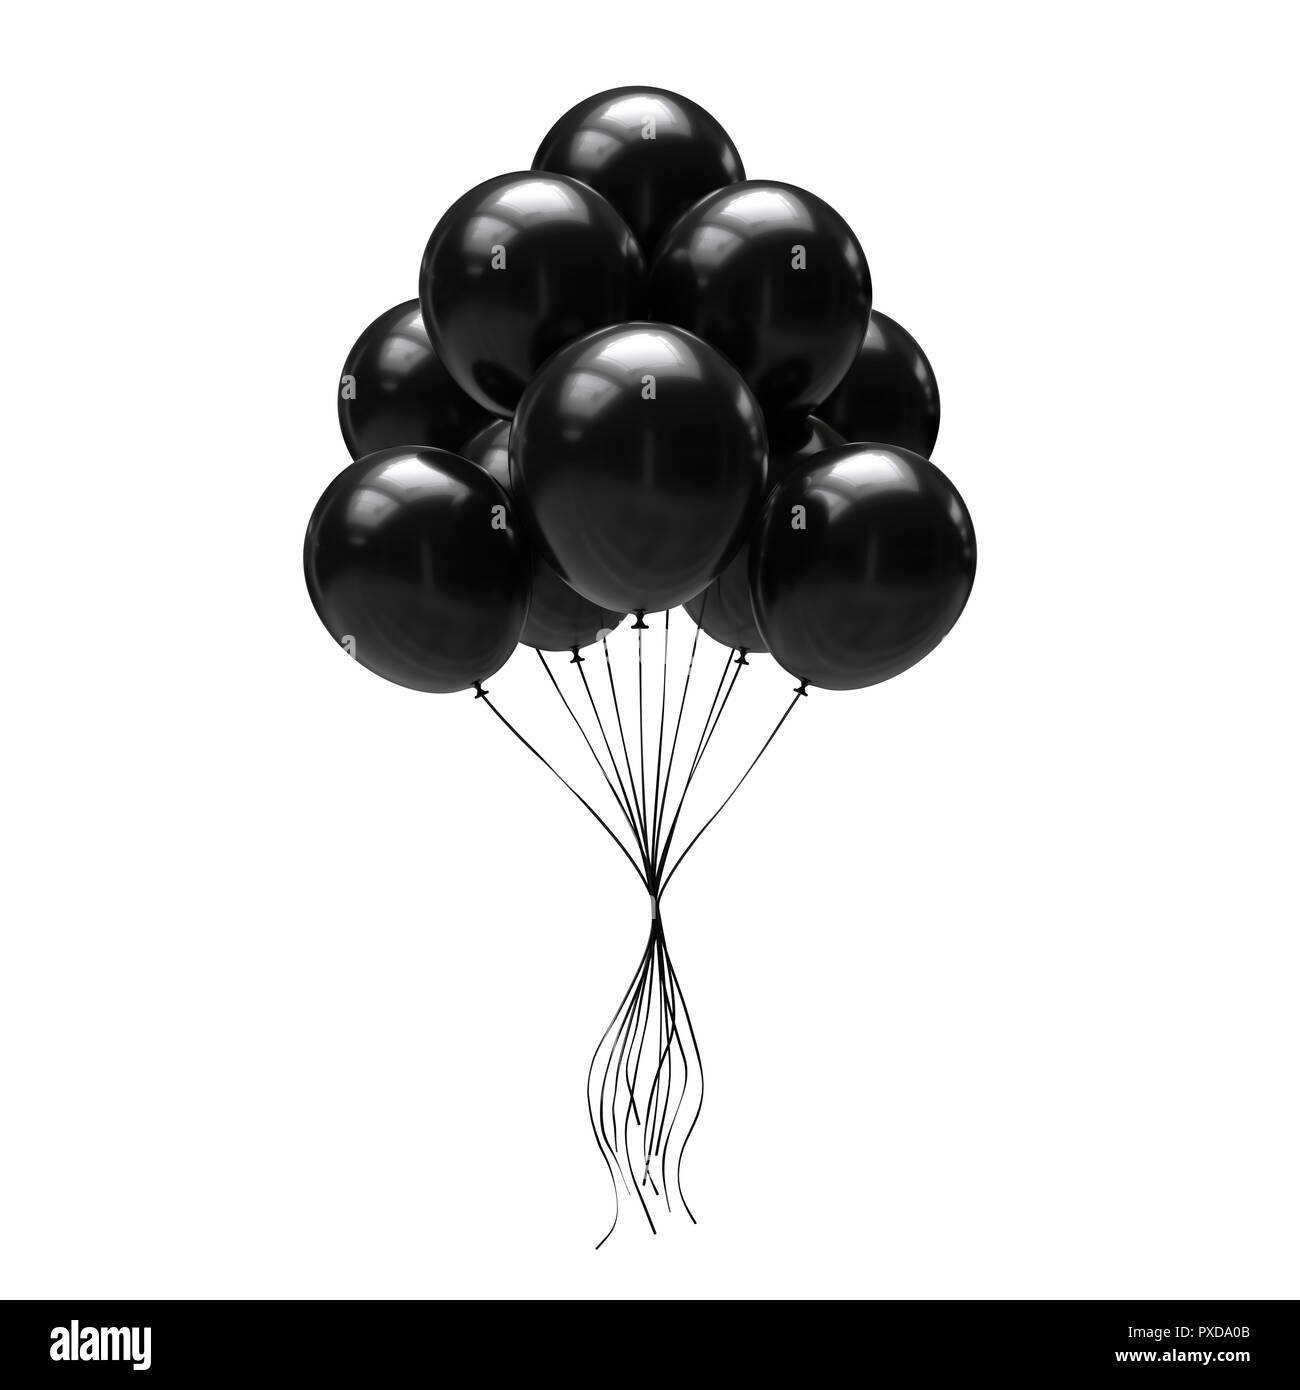 Schwarze Luftballons isoliert auf weißem Hintergrund. 3D-Darstellung  Stockfotografie - Alamy